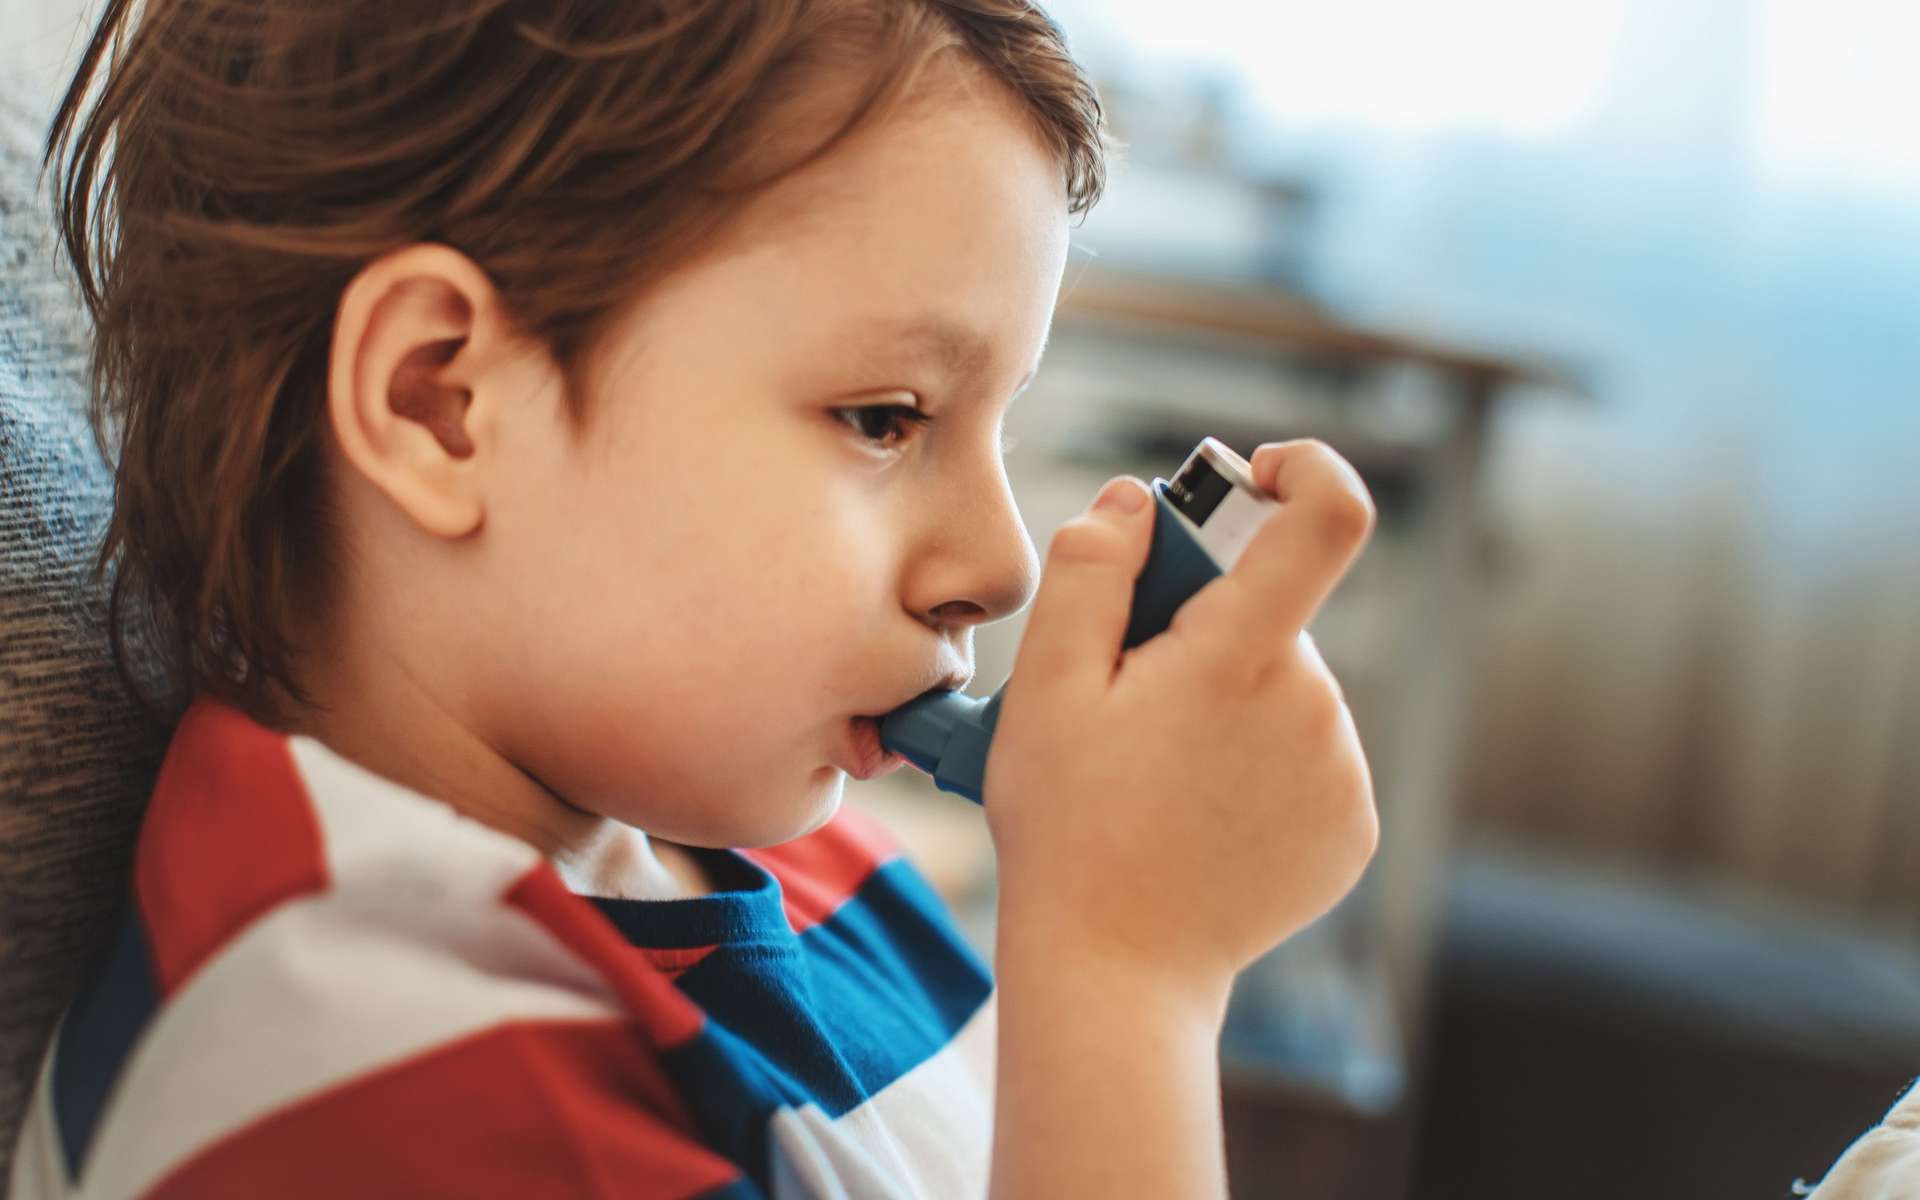 La cuisson au gaz déclenche-t-elle l'asthme chez les enfants ? Deux études suscitent la controverse